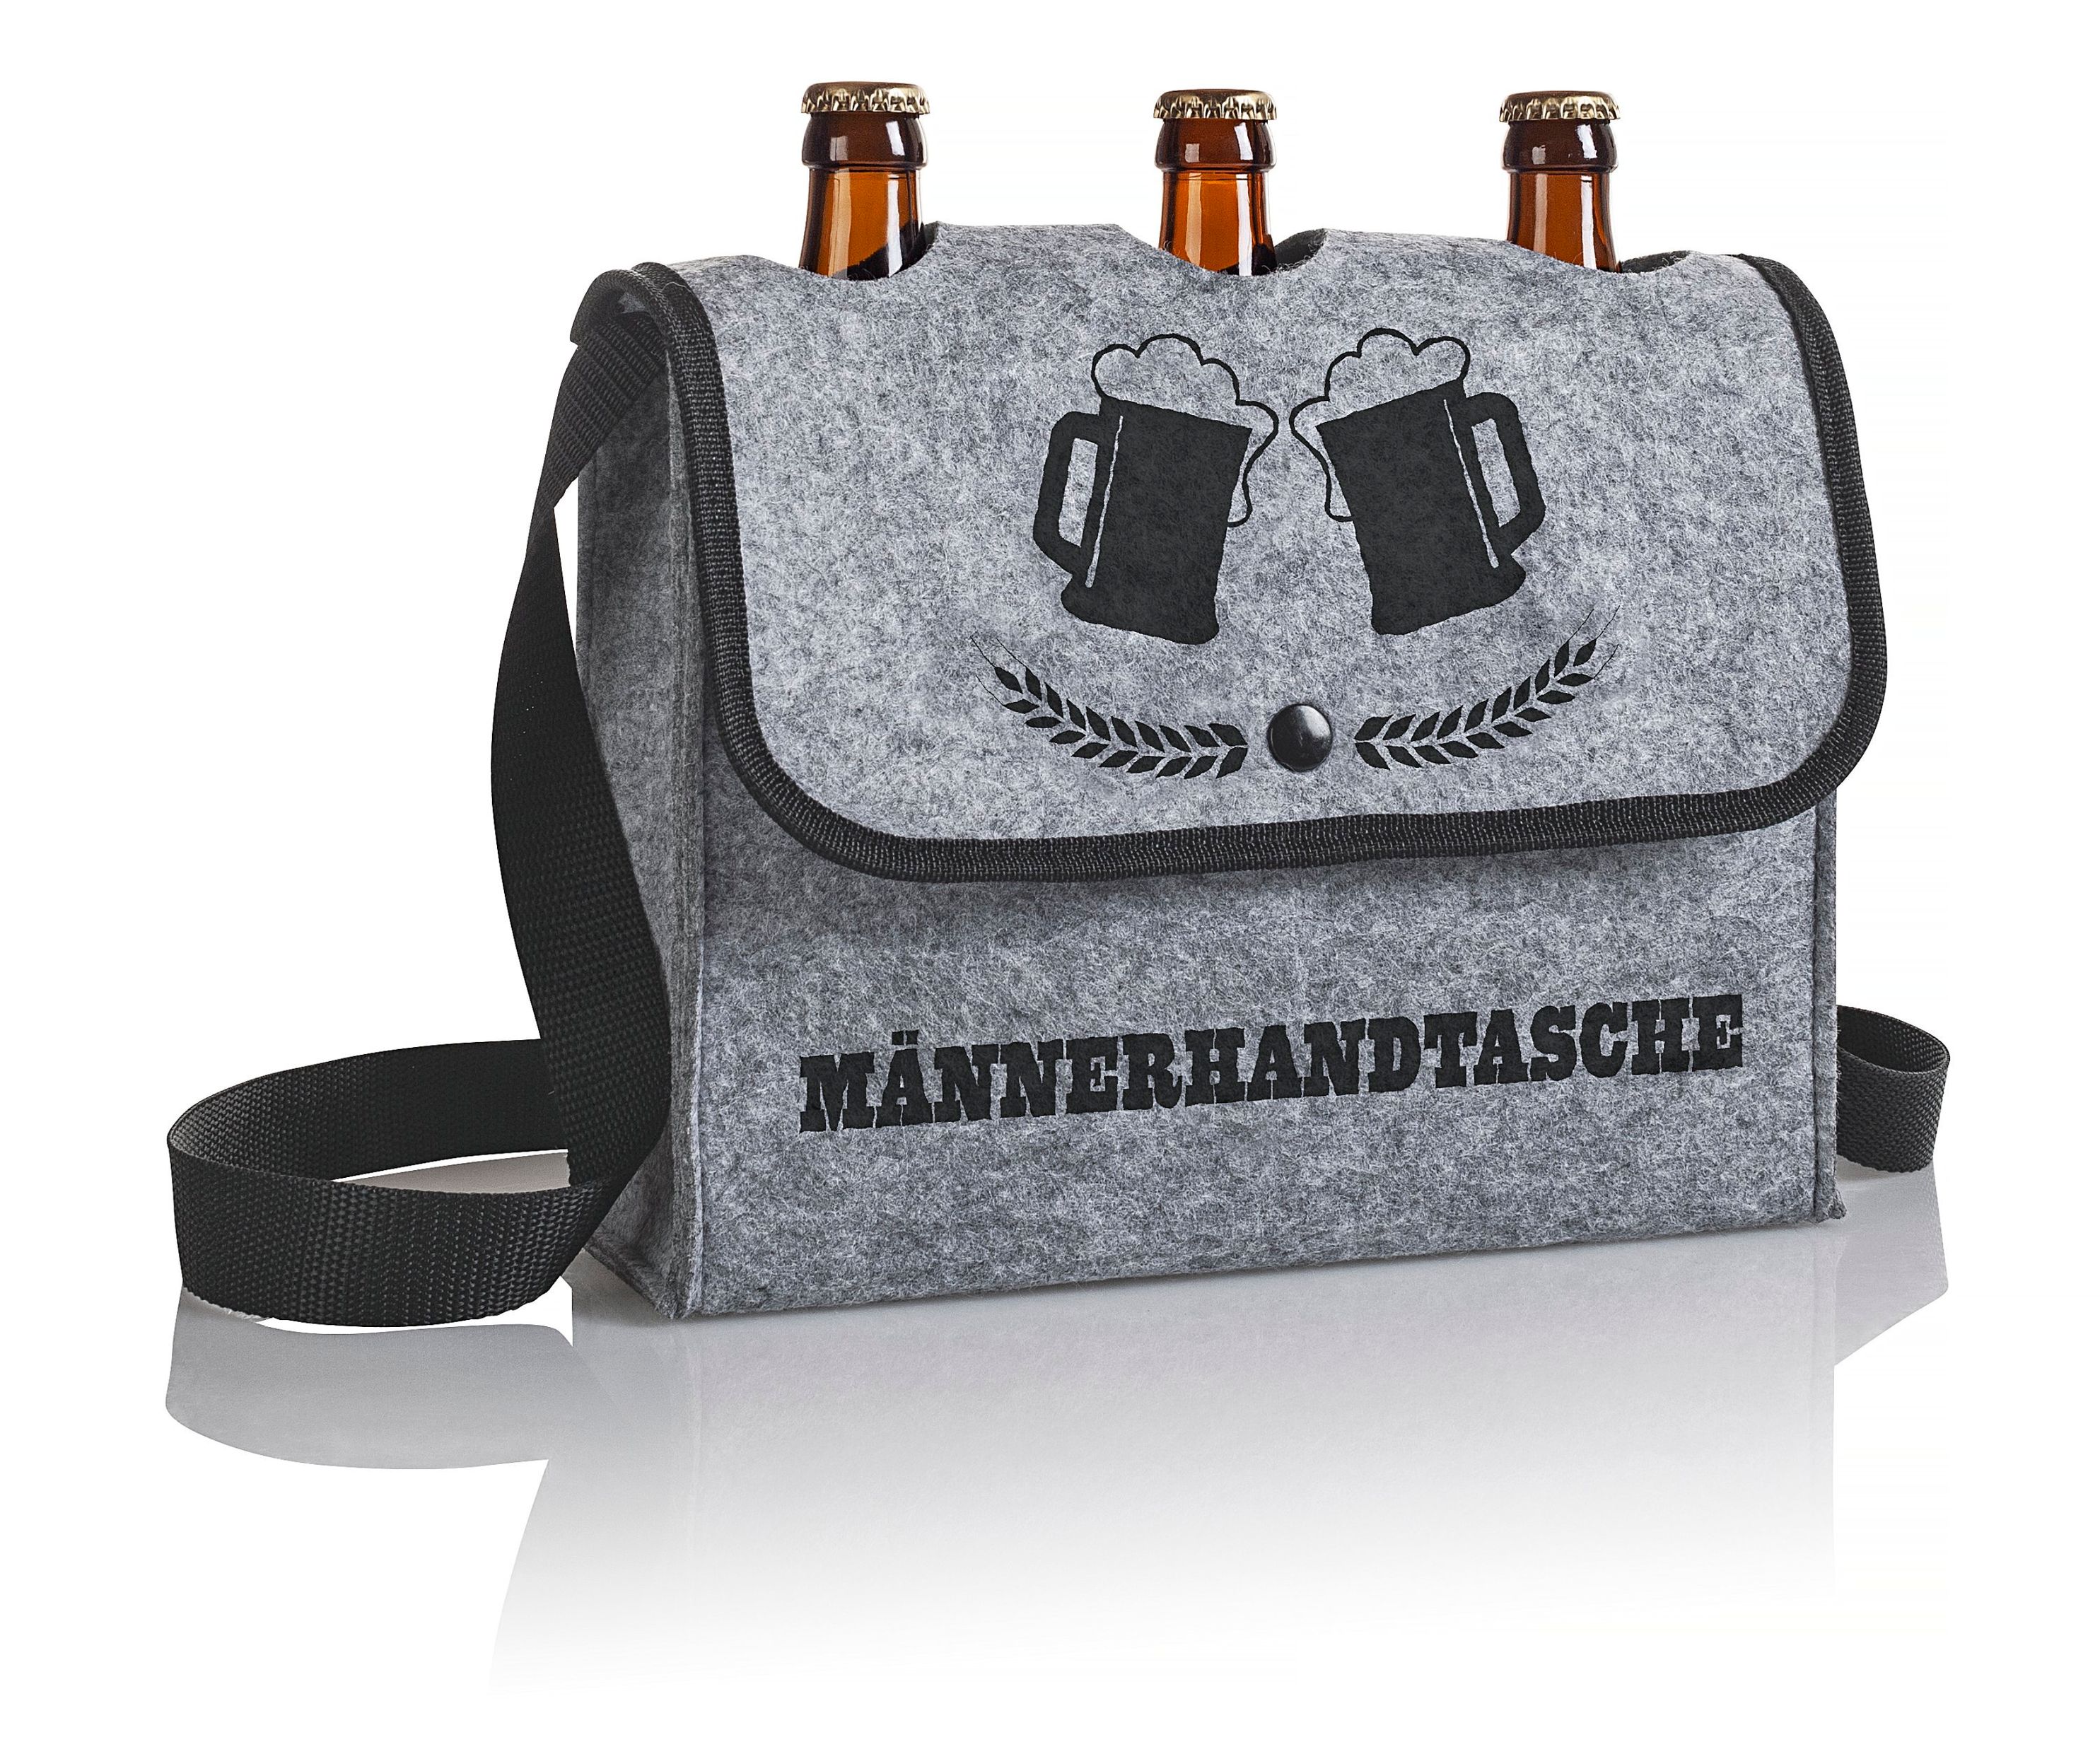 Männerhandtasche Beer to Go jetzt bei Weltbild.de bestellen